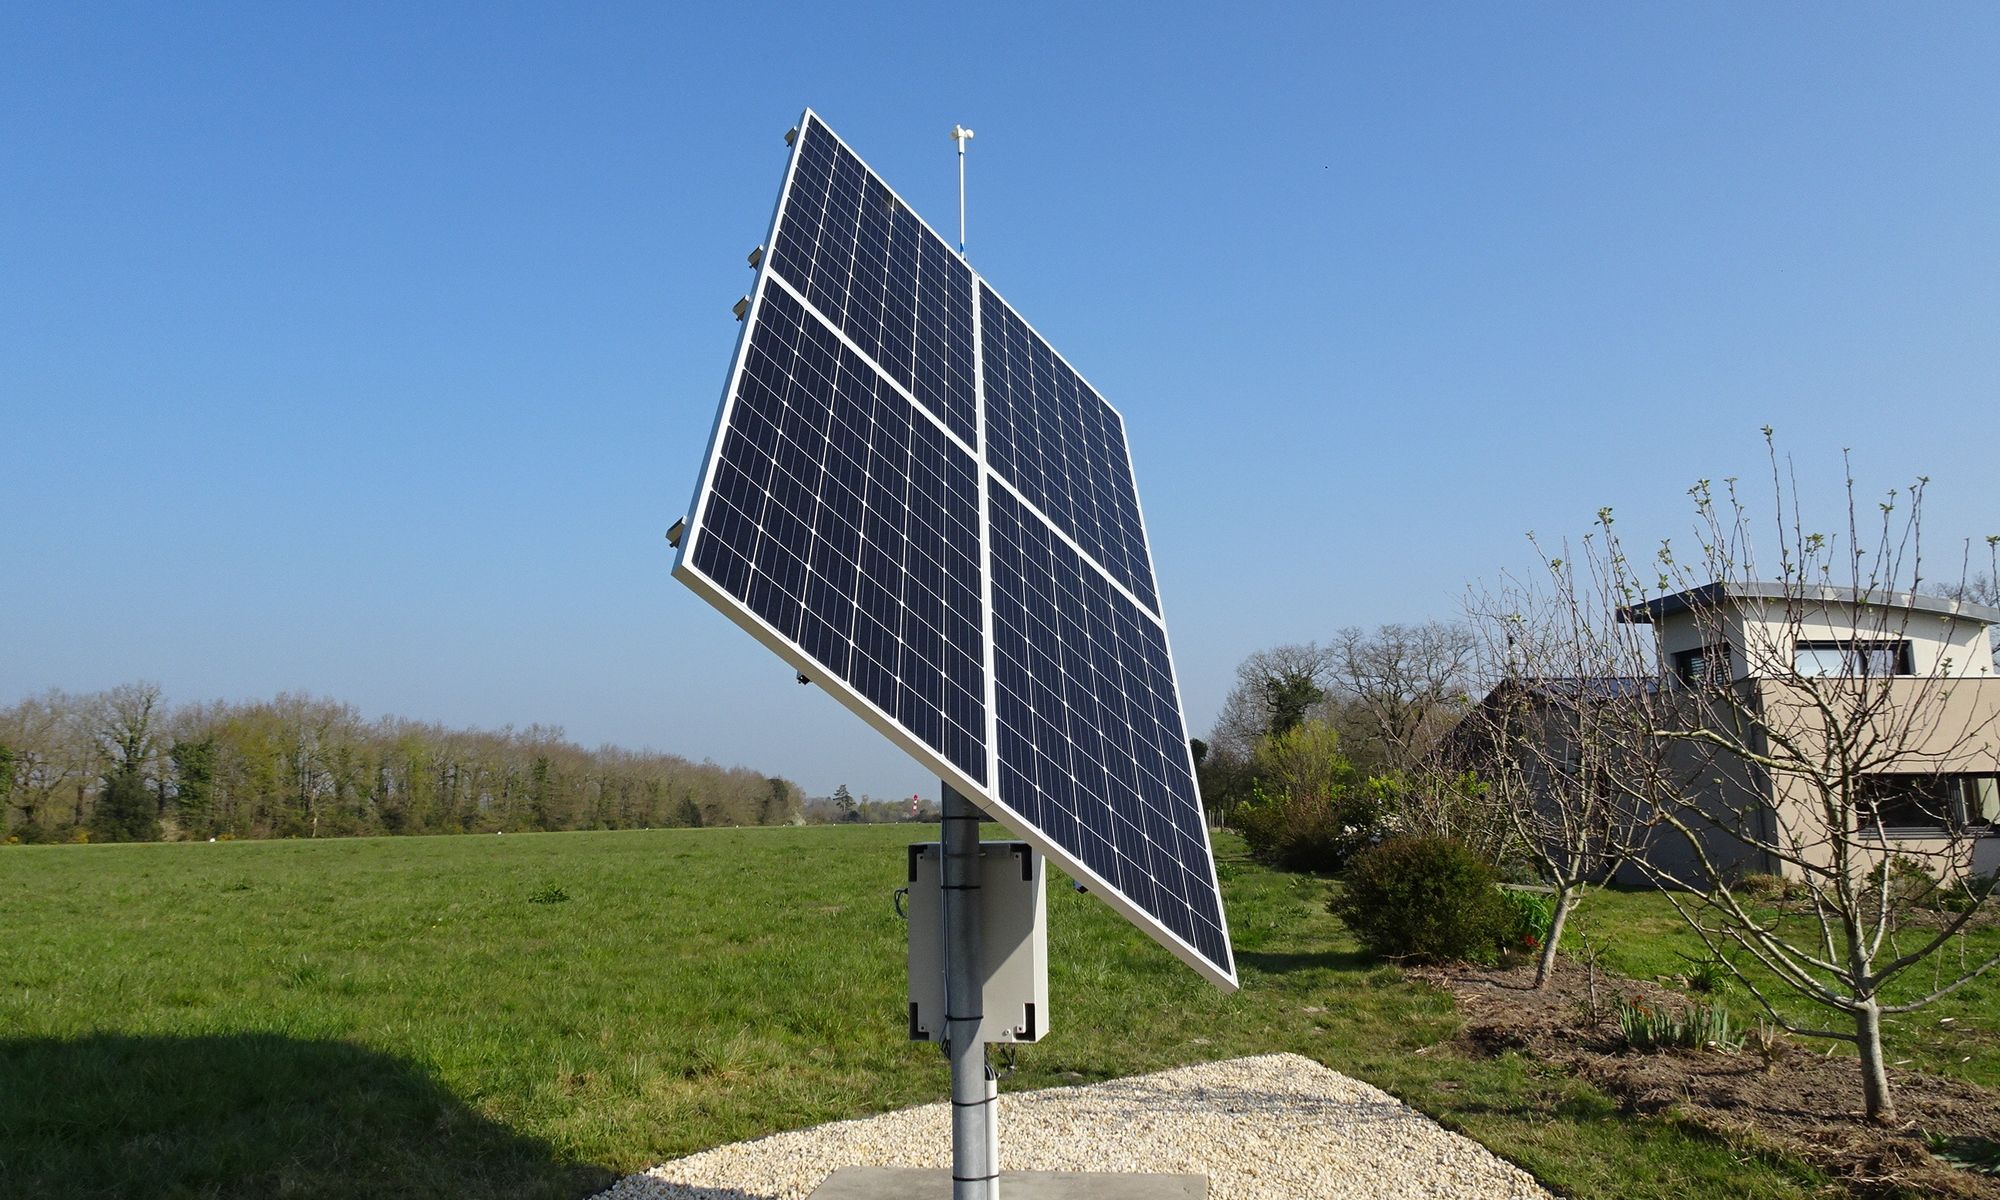 Tournesol le tracker solaire intelligent pour augmenter le rendement de vos panneaux photovoltaiques